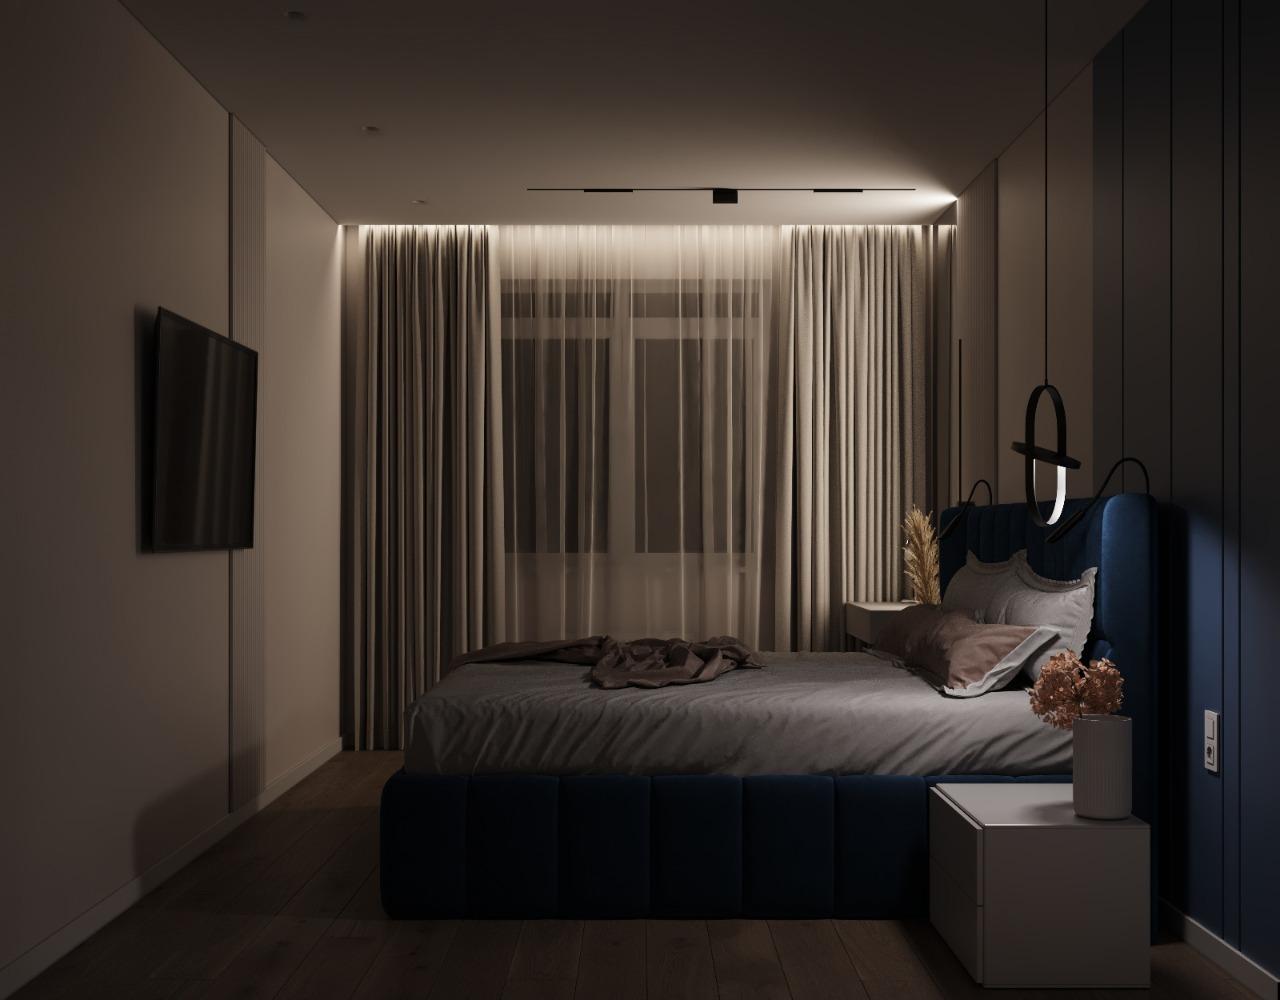 Интерьер спальни с нишей с подсветкой, рейками с подсветкой, бра над кроватью, подсветкой настенной, подсветкой светодиодной, светильниками над кроватью и с подсветкой